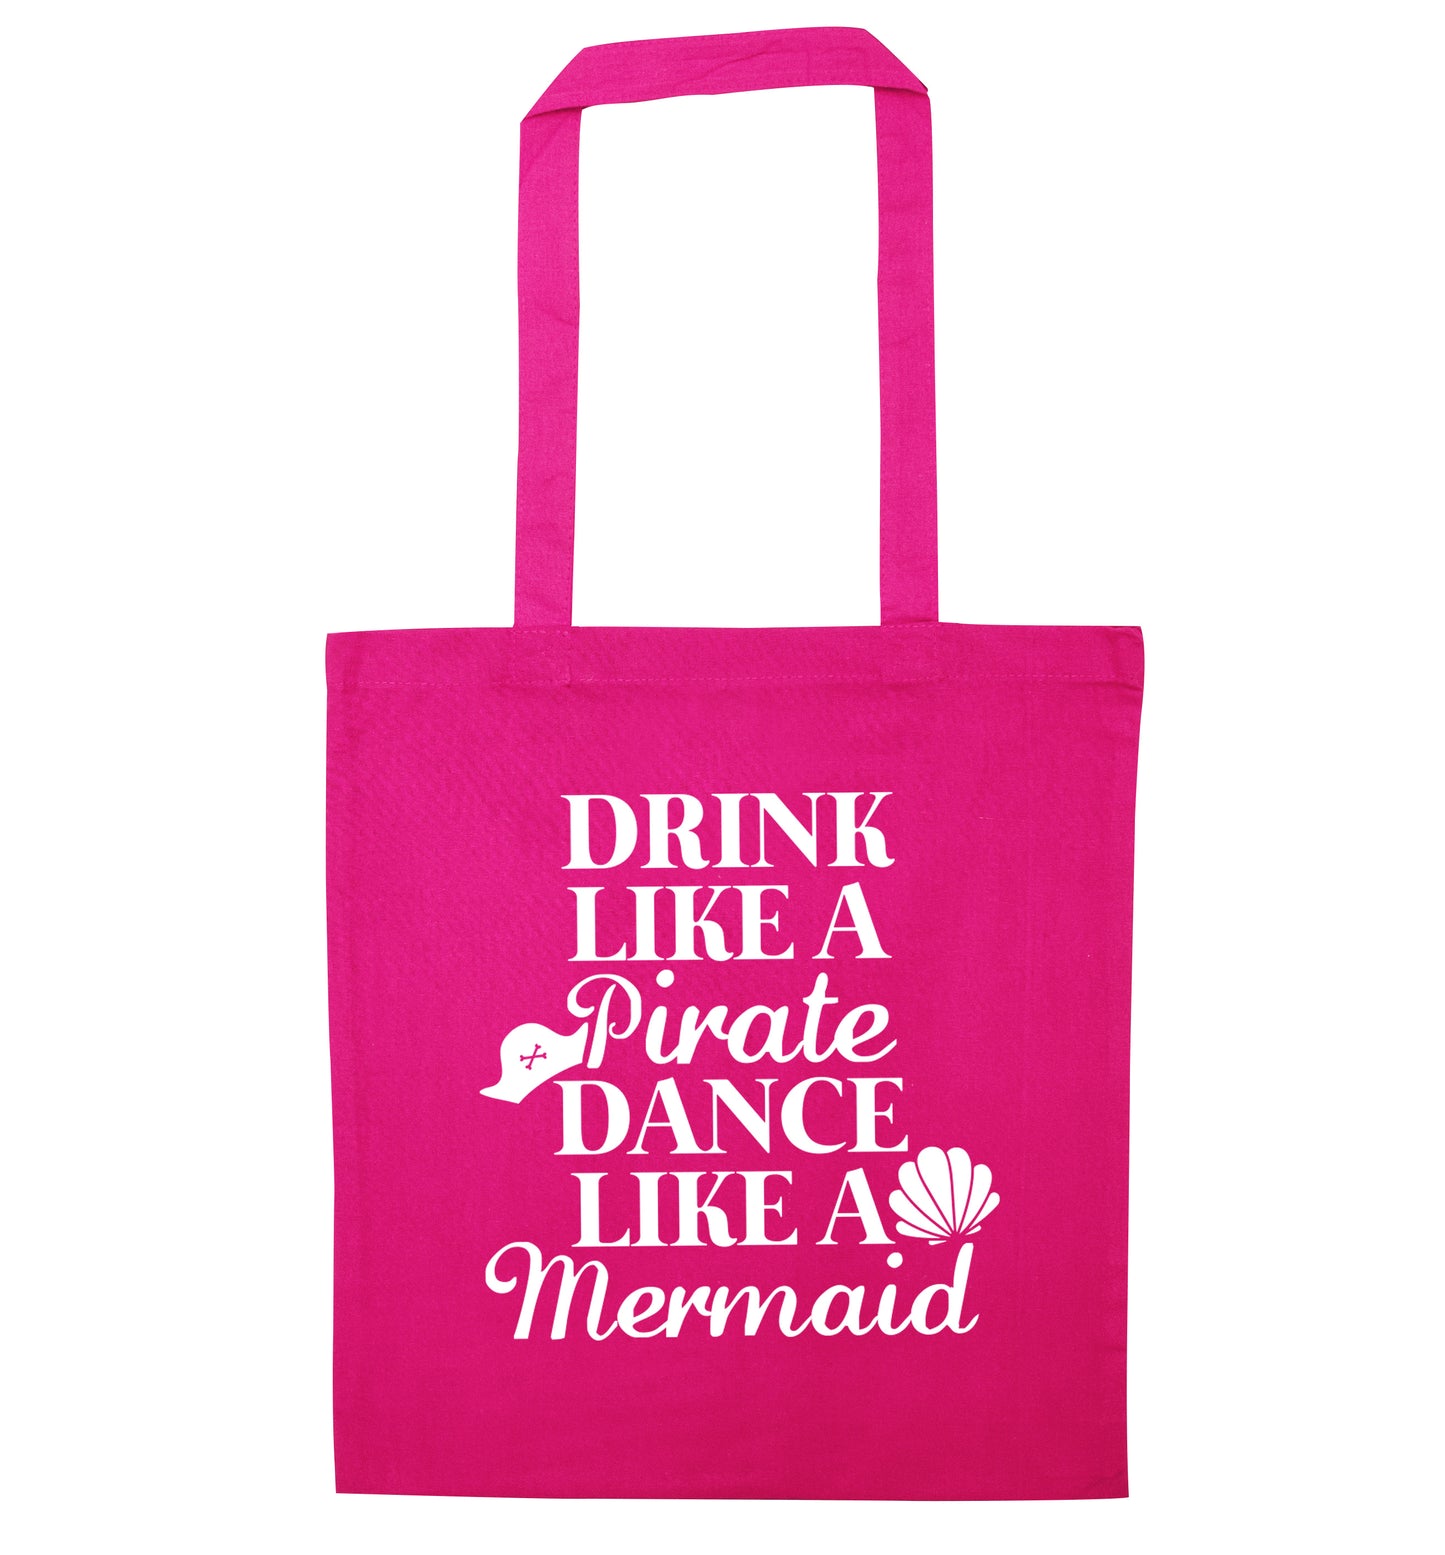 Drink like a pirate dance like a mermaid pink tote bag